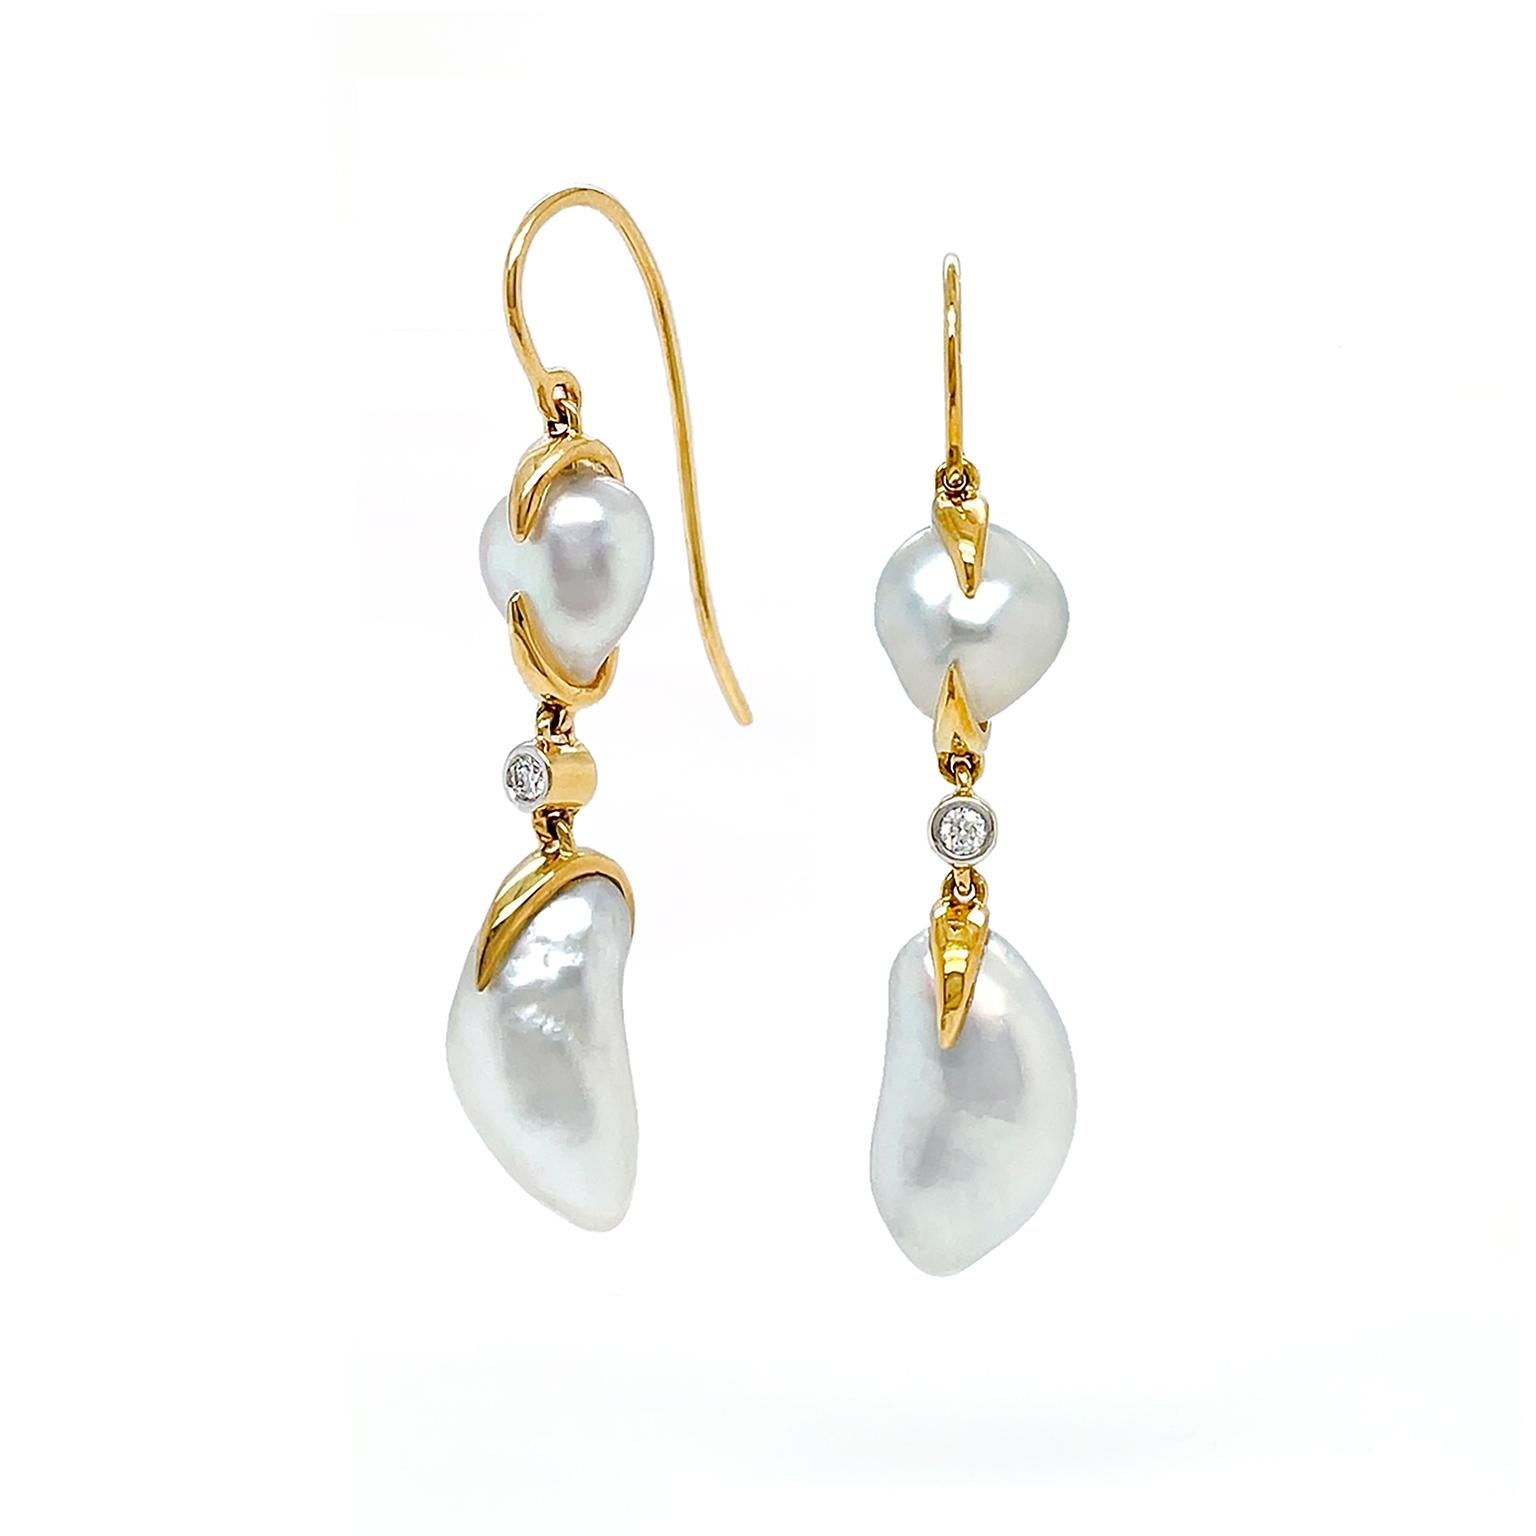 Die satinierten Körper der weißen Keshi-Perlen sind der Mittelpunkt dieser Ohrringe. Französische Haken aus 18 Karat Gelbgold führen zu einer kissenförmigen weißen Keshi-Perle, die mit Gold befestigt ist. In der Mitte sorgt ein einzelner Diamant im